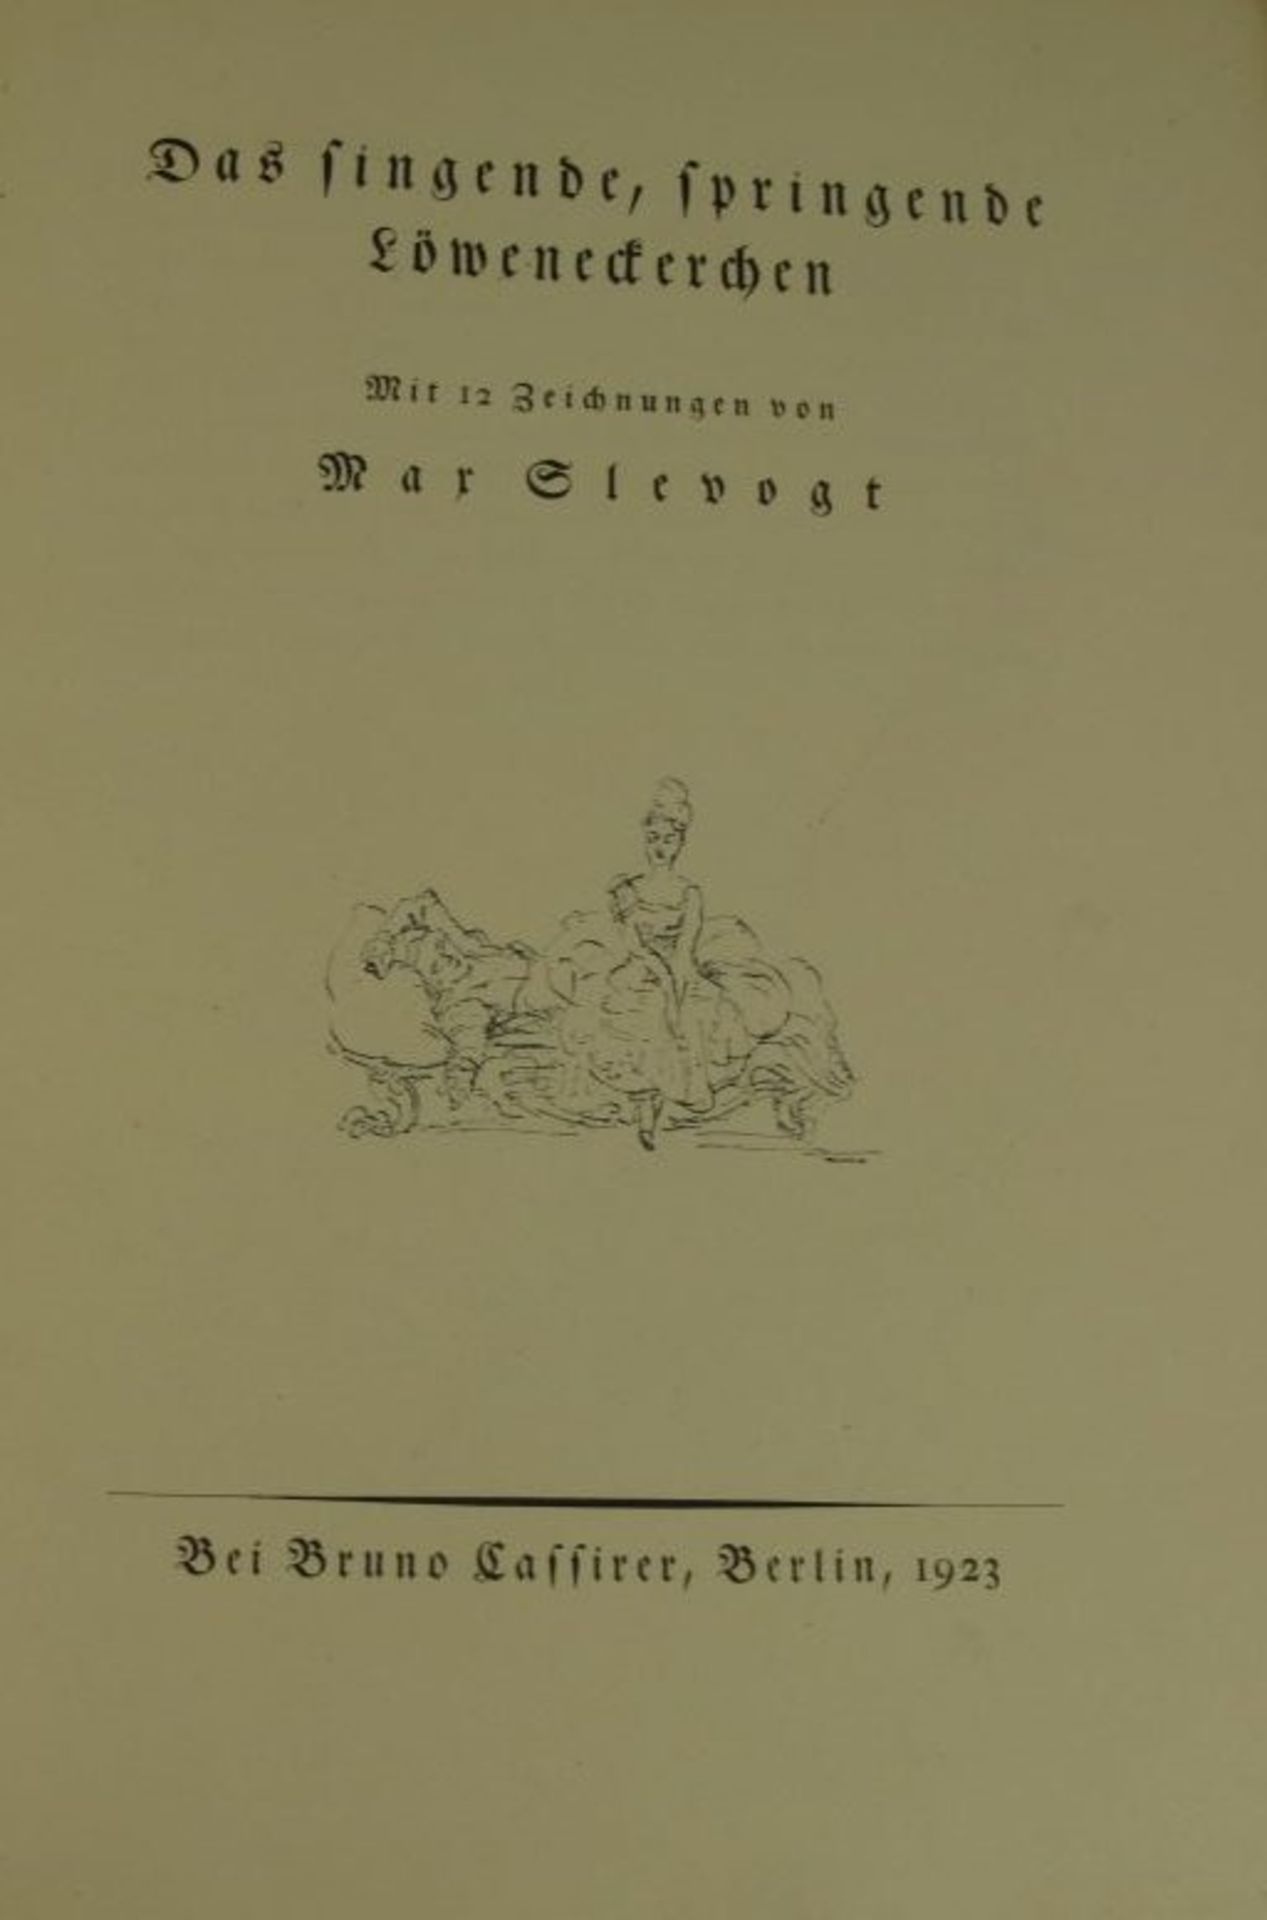 Das singende, springende Löweneckerchen, Max Slevogt, limit. Auflage, Nr. 169, auf letzter Seite - Bild 2 aus 3